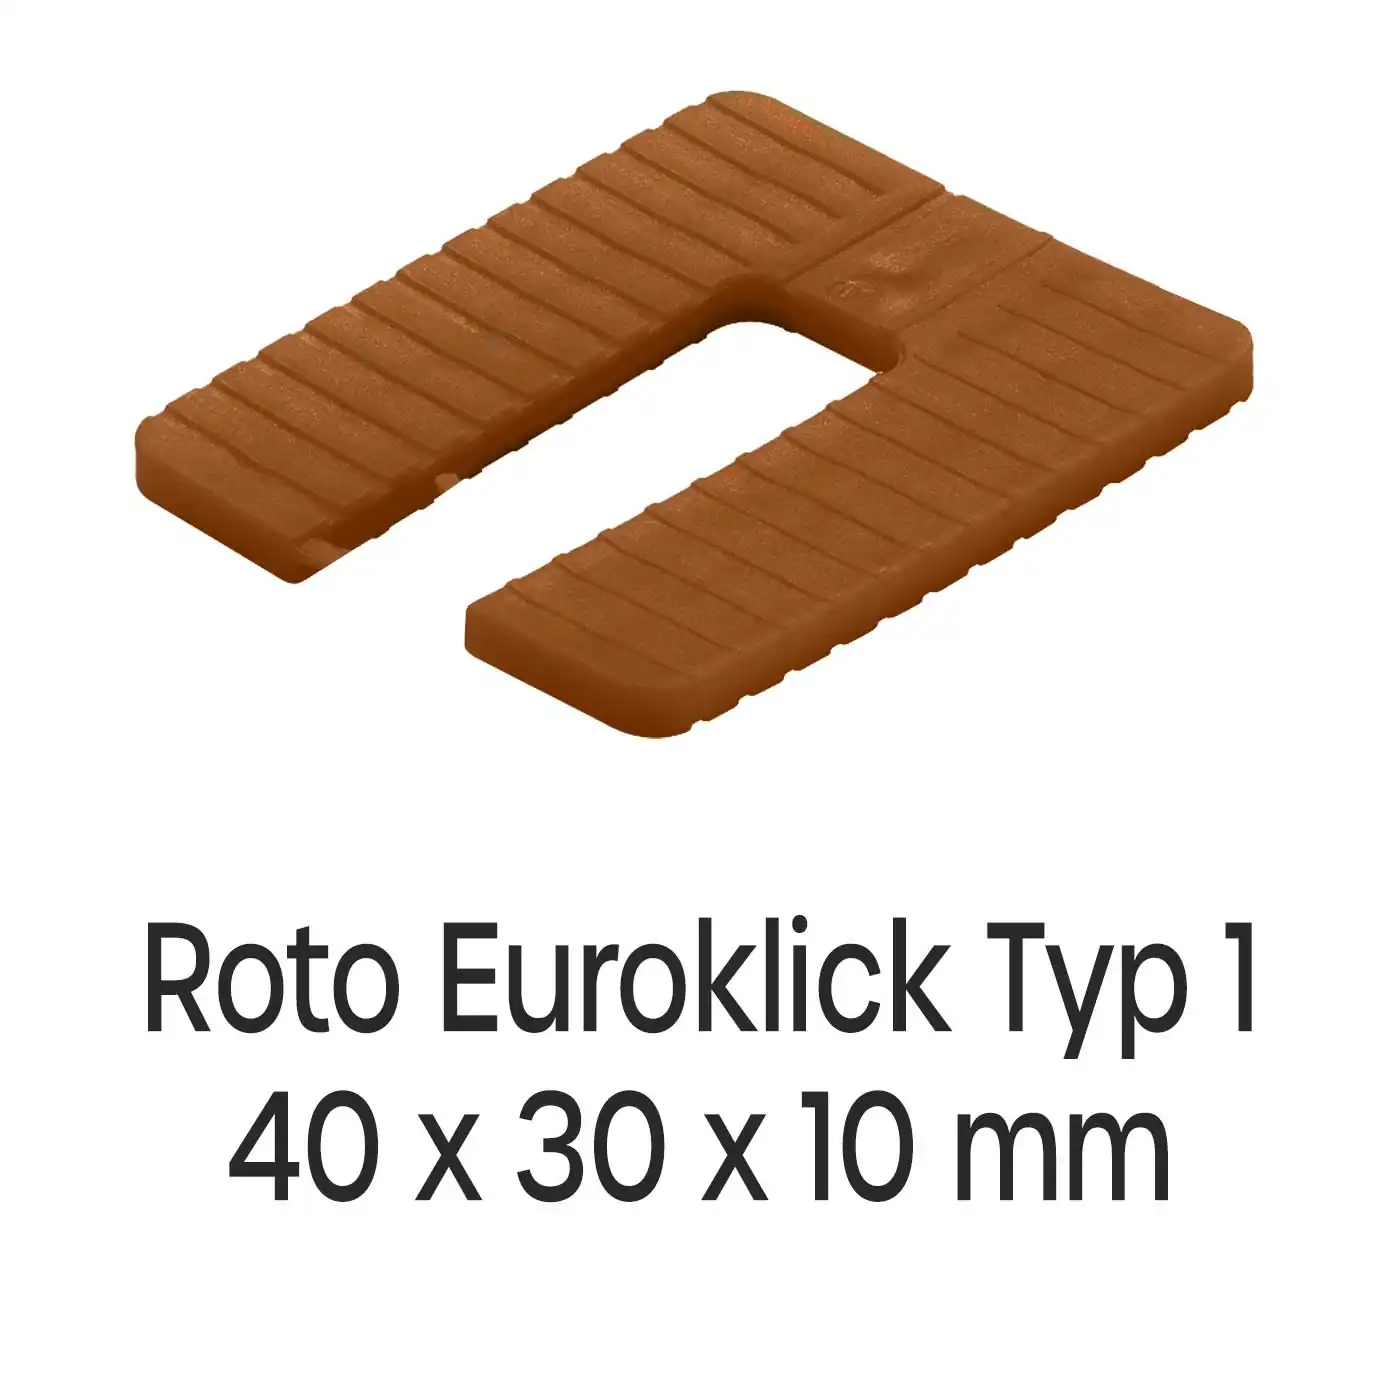 Distanzplatten Roto Euroklick Typ 1 40 x 30 x 10 mm 500 Stück